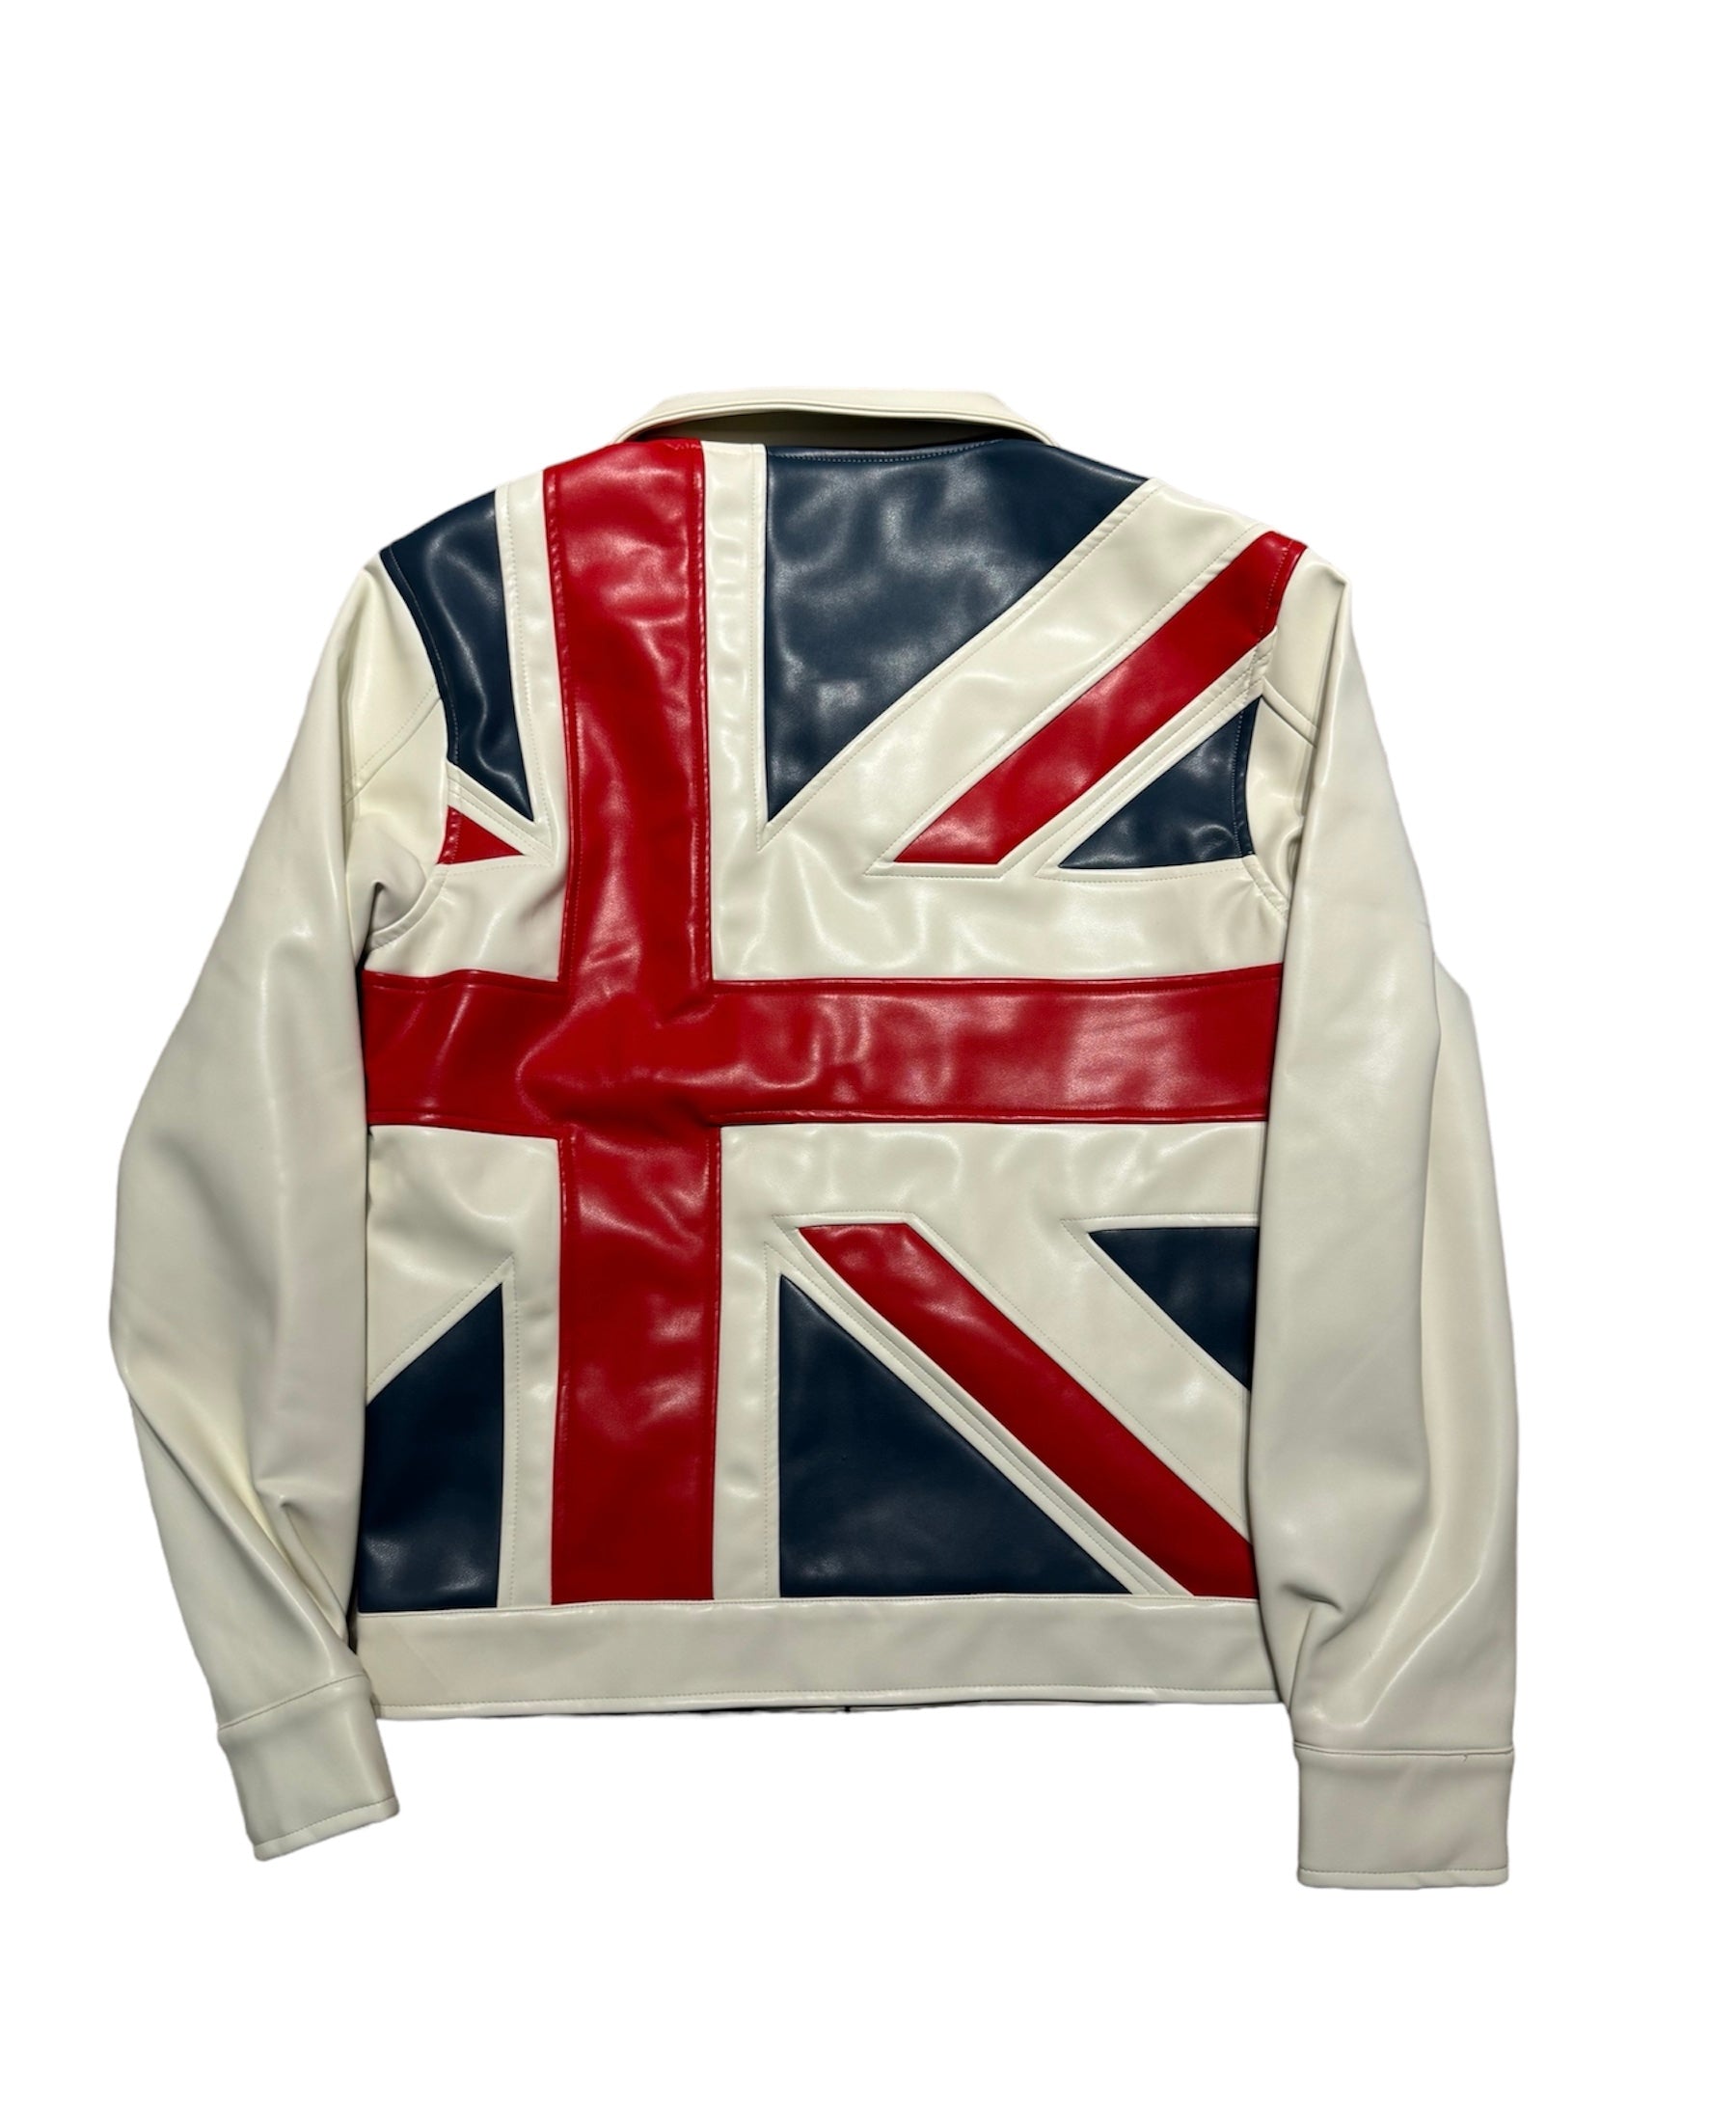 UK Leather Jacket